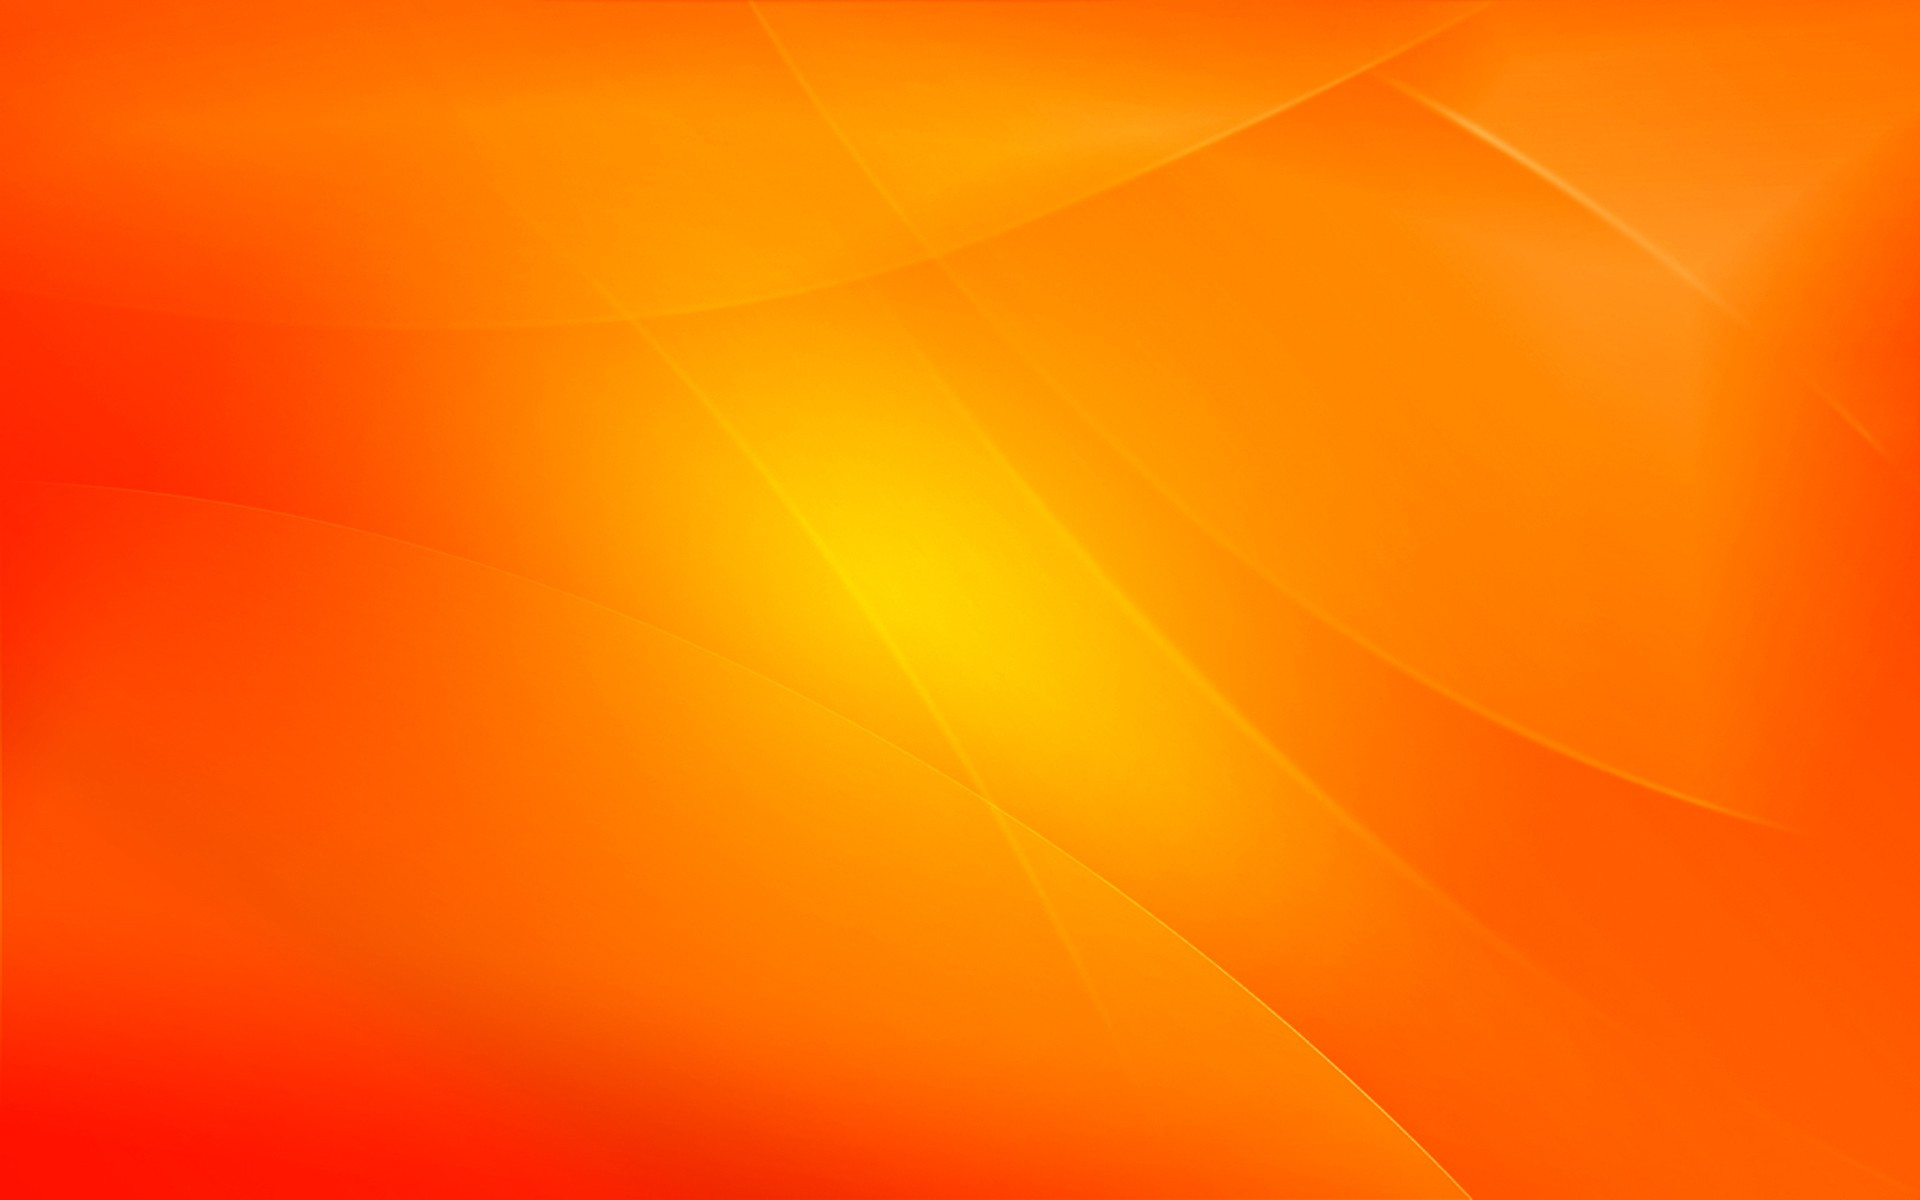 Với những người yêu màu cam, hình nền cam sẽ là sự lựa chọn tuyệt vời để làm nền cho điện thoại của bạn. Hình nền cam sáng tạo sẽ mang đến cho bạn một trải nghiệm thú vị mỗi khi bật điện thoại. Hãy cùng ngắm nhìn những hình nền cam đẹp mắt và đầy sức hút này.